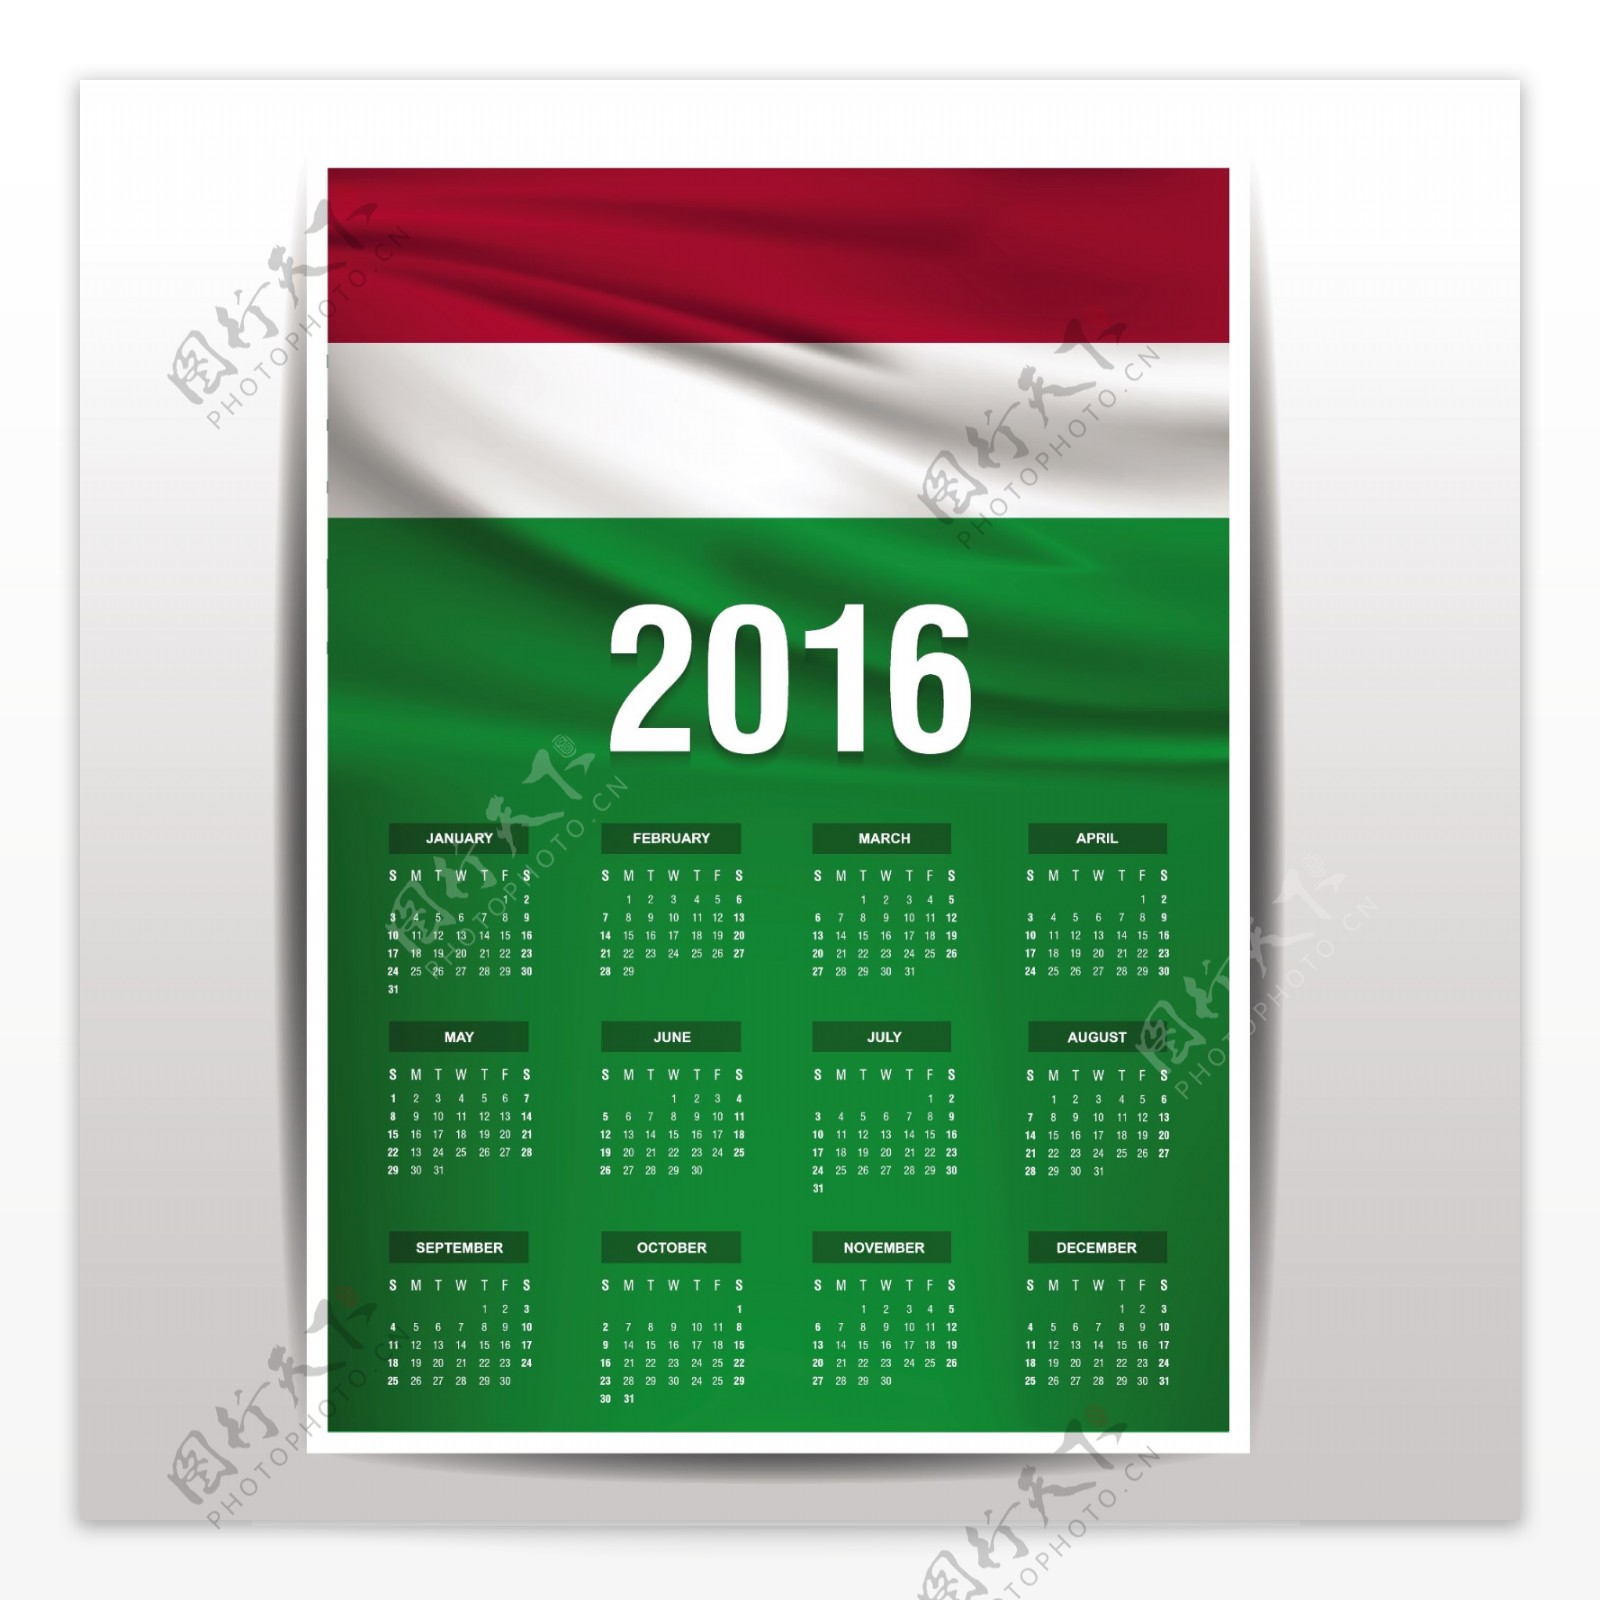 匈牙利日历2016